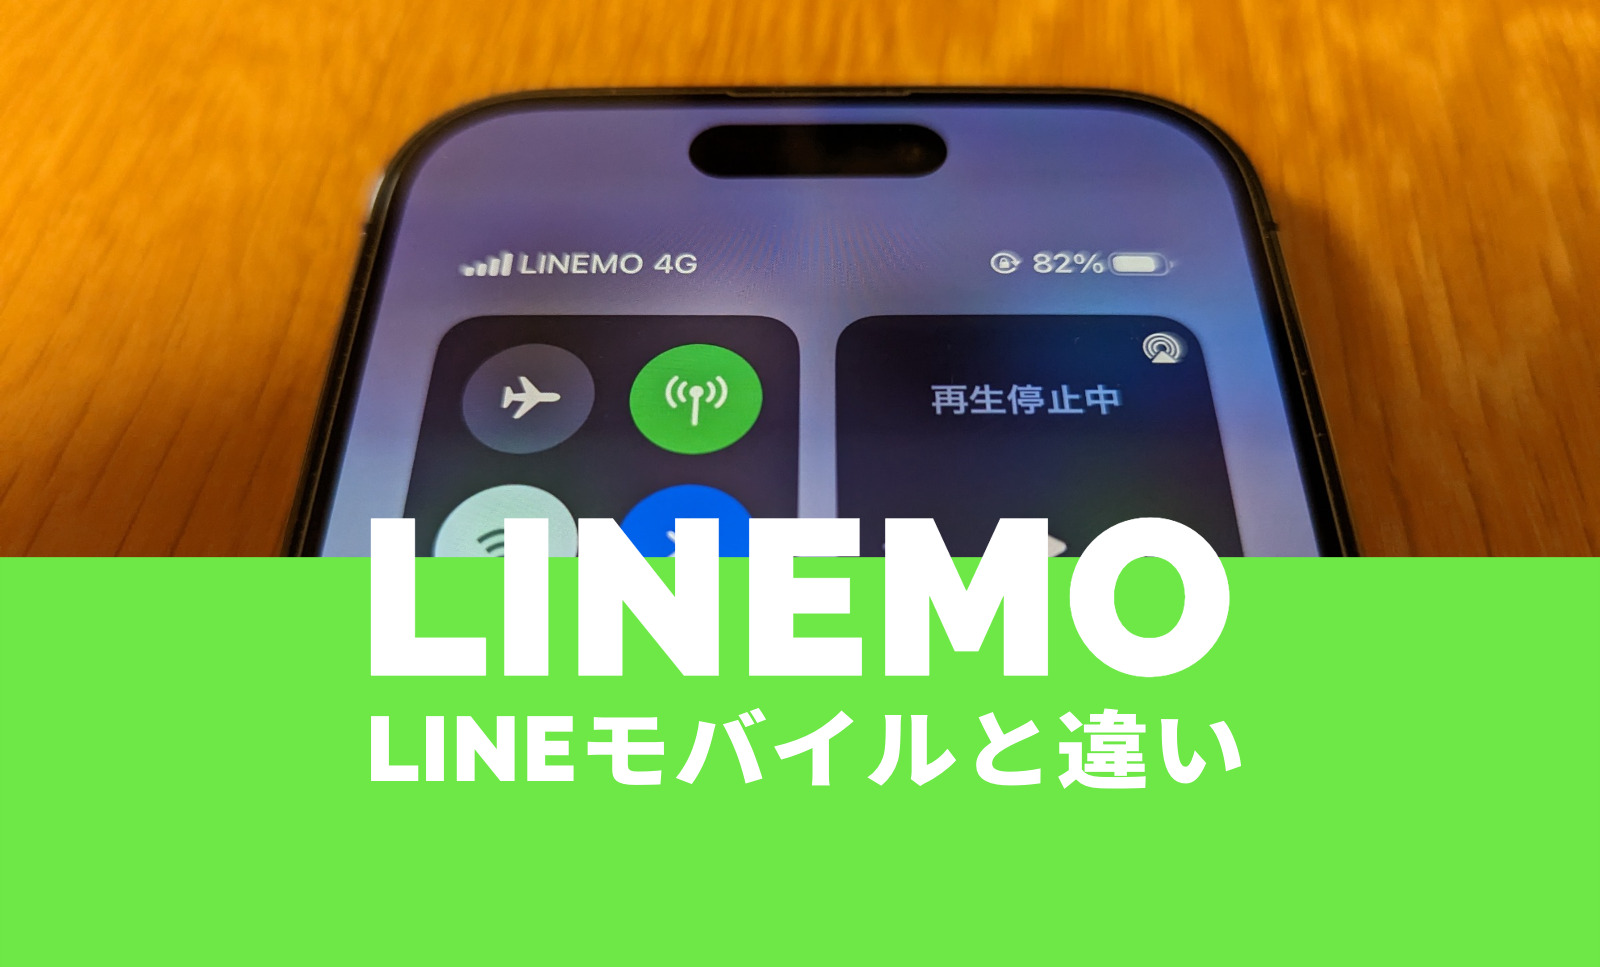 LINEモバイルとLINEMO(ラインモ)の重要な違いは使用回線、比較して解説のサムネイル画像